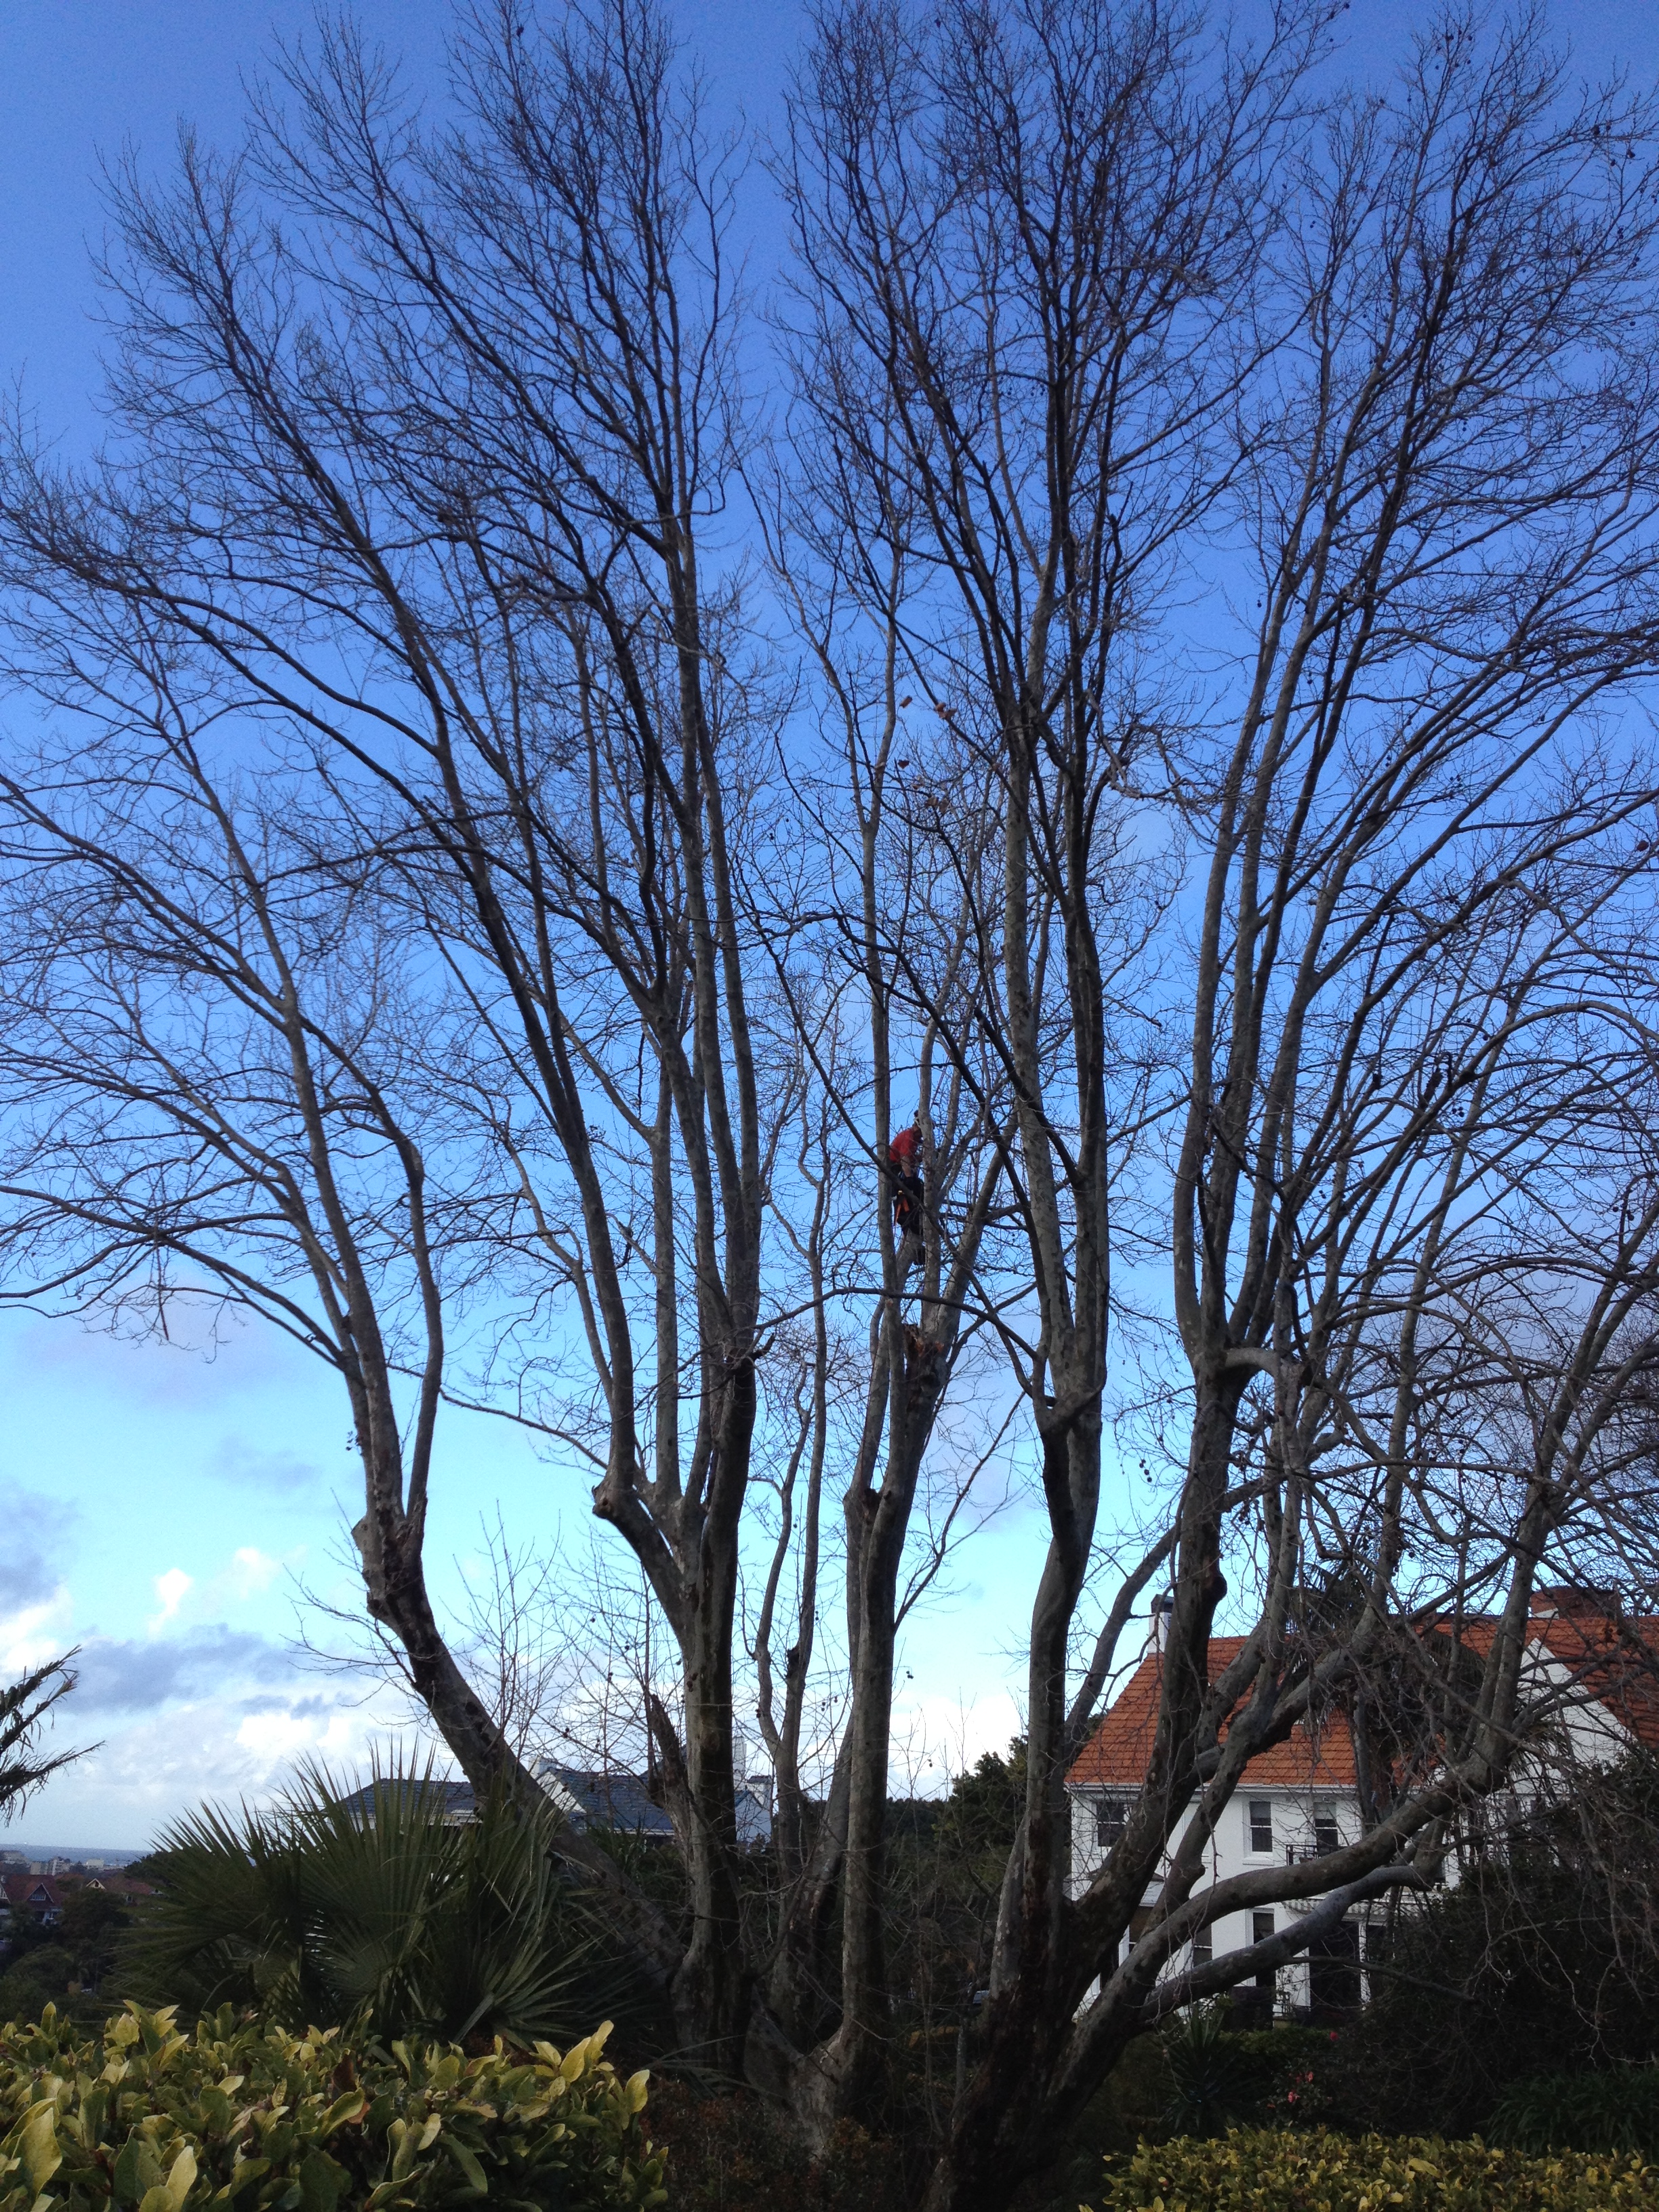 London Plane tree pruning in Bellevue Hill